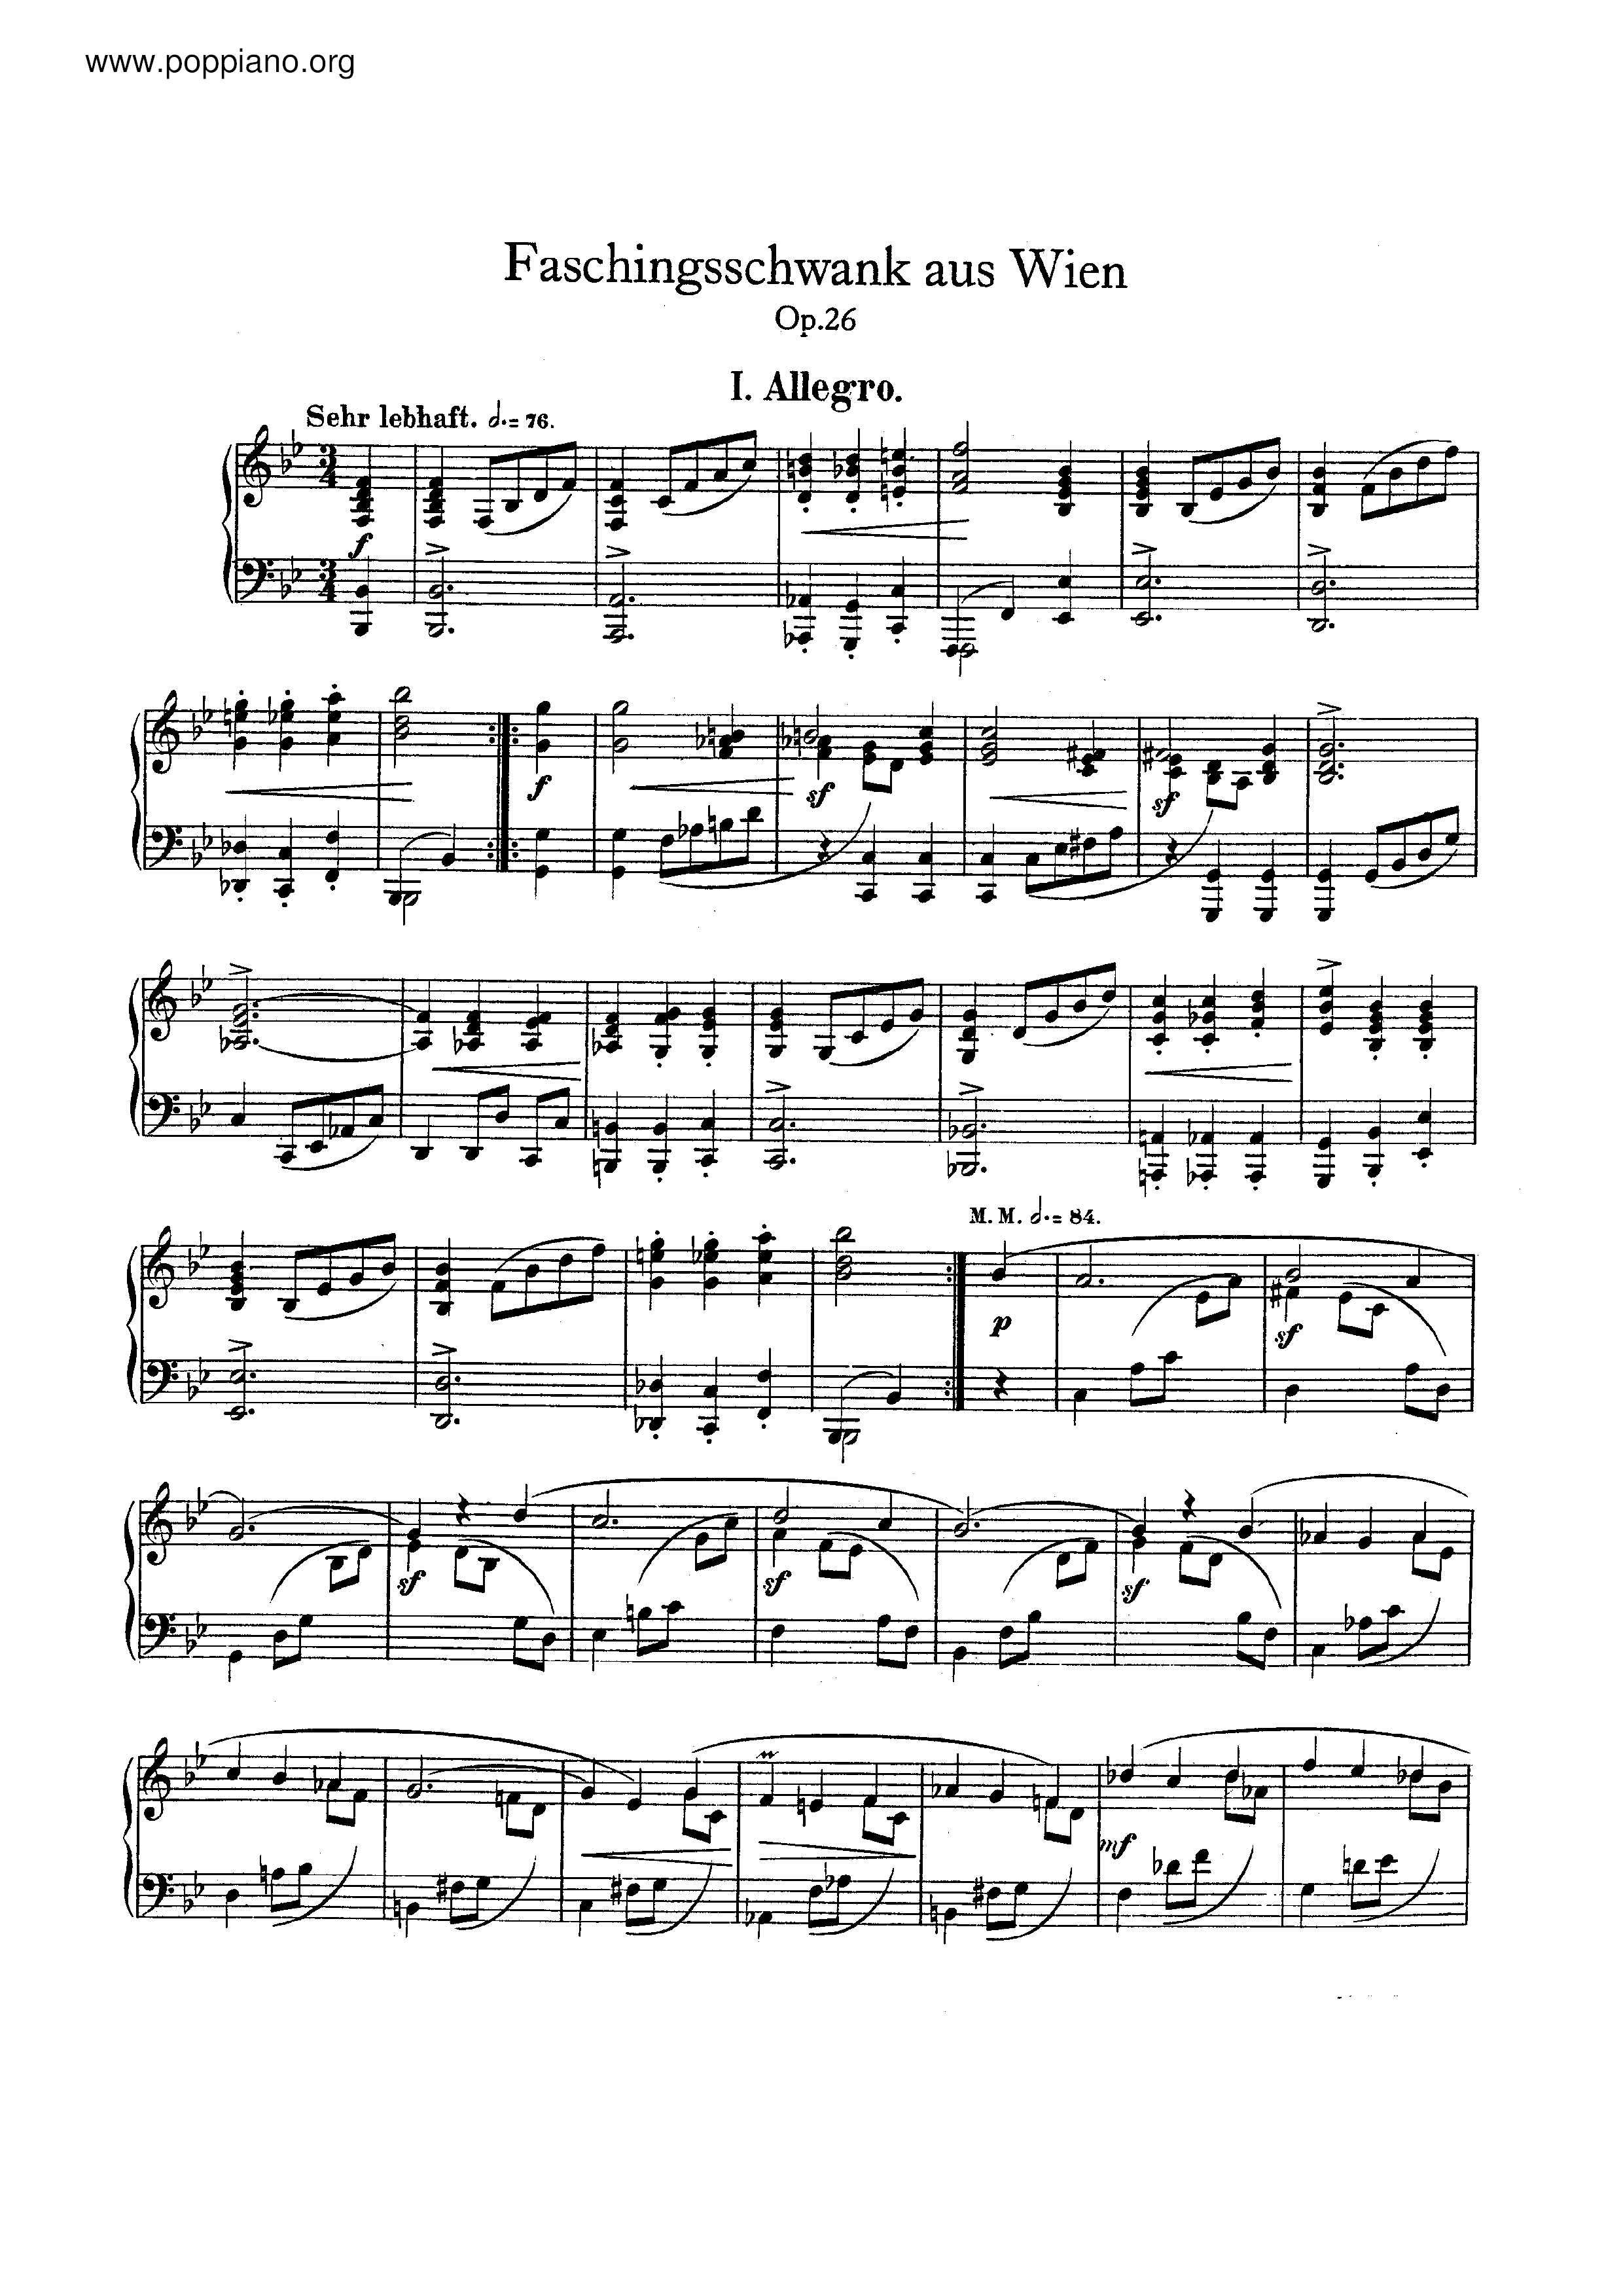 Faschingsschwank aus Wien, Op.26 Score